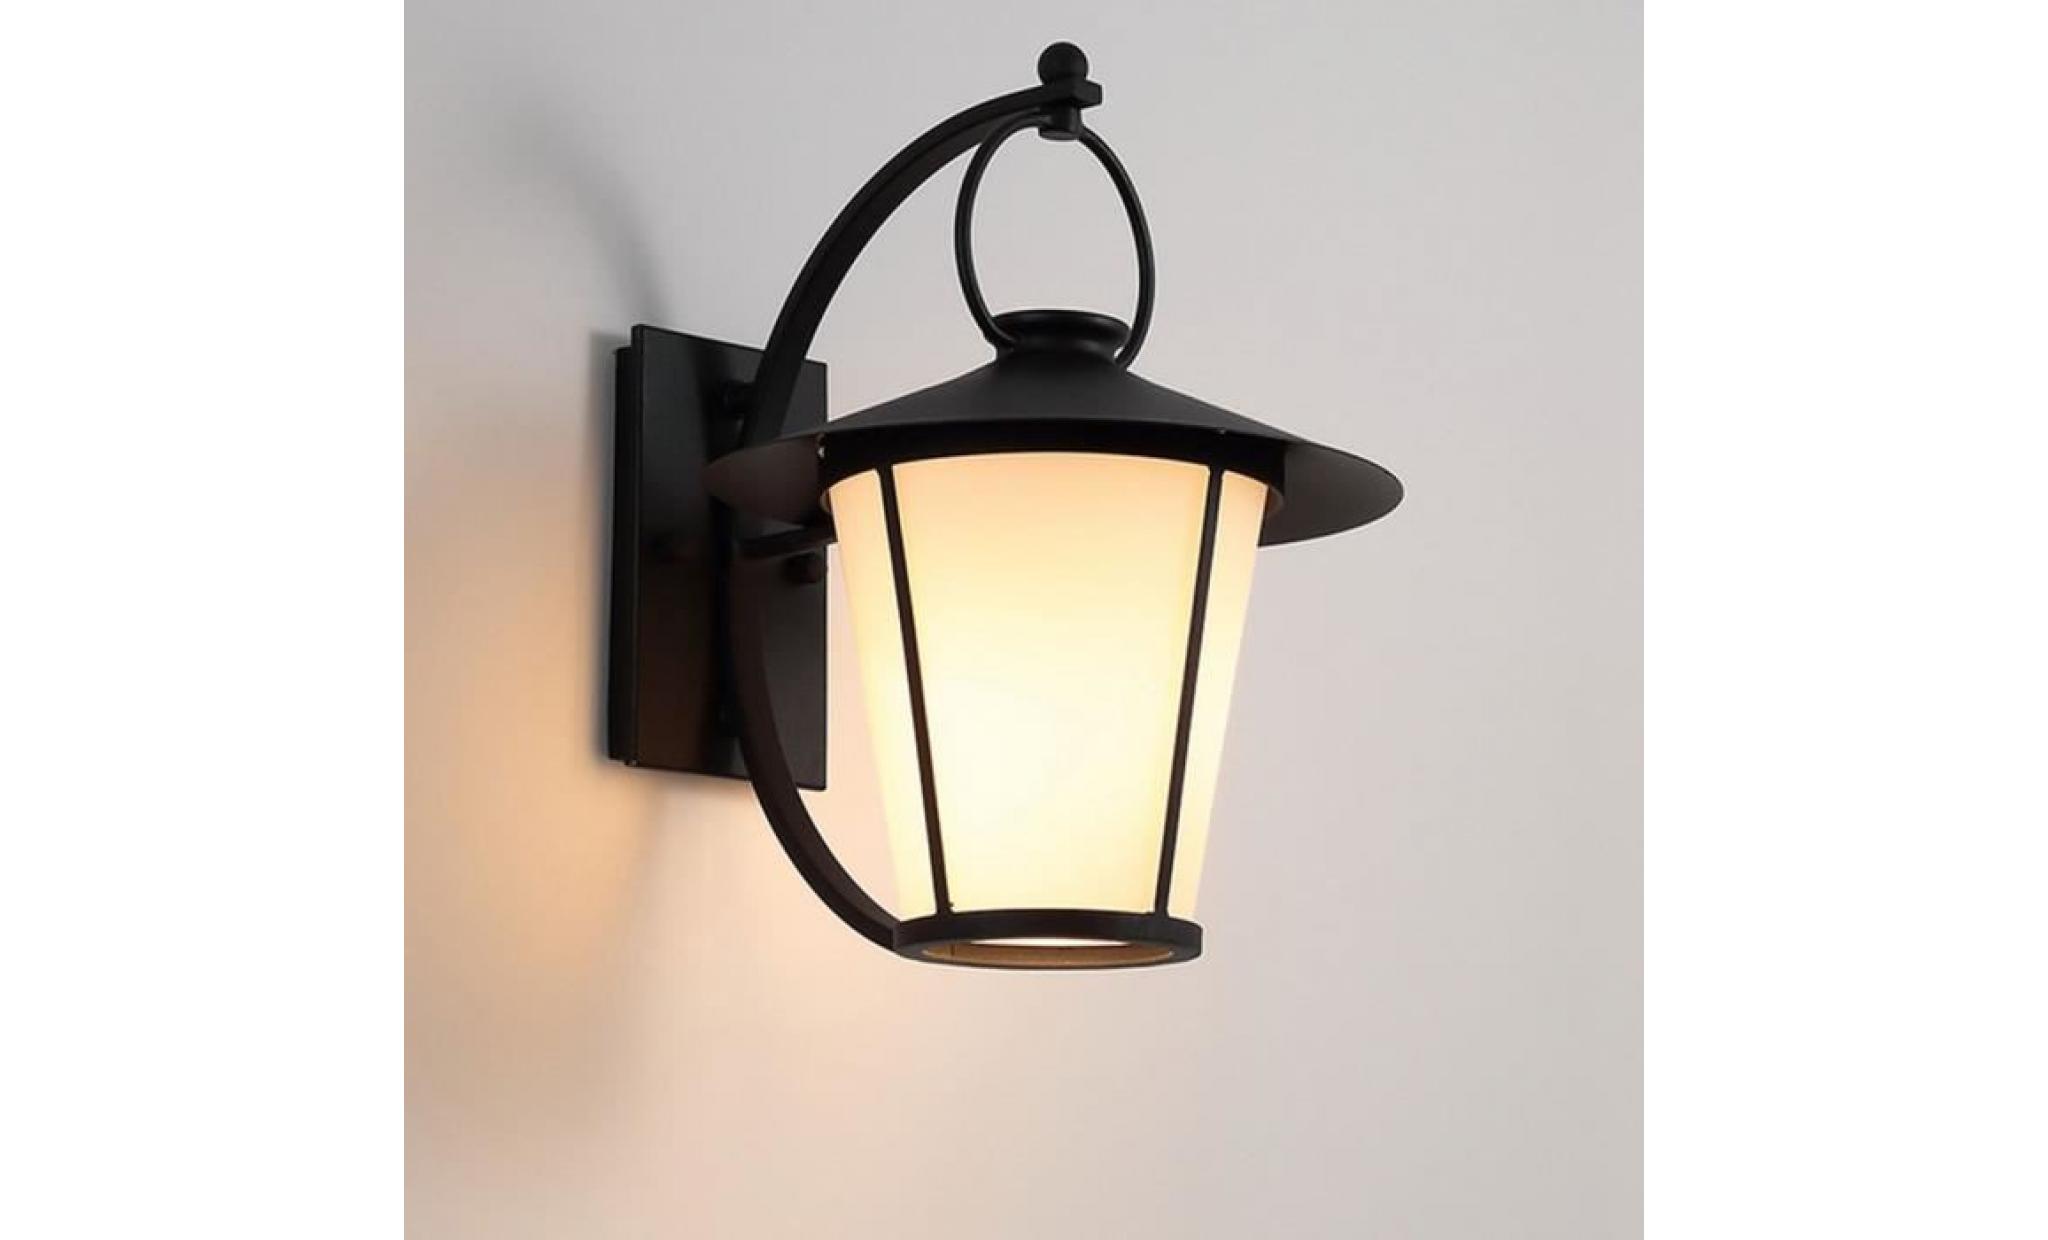 stoex® applique murale vintage luminaire lampe industrielle metal rétro fer mur de feu éclairage